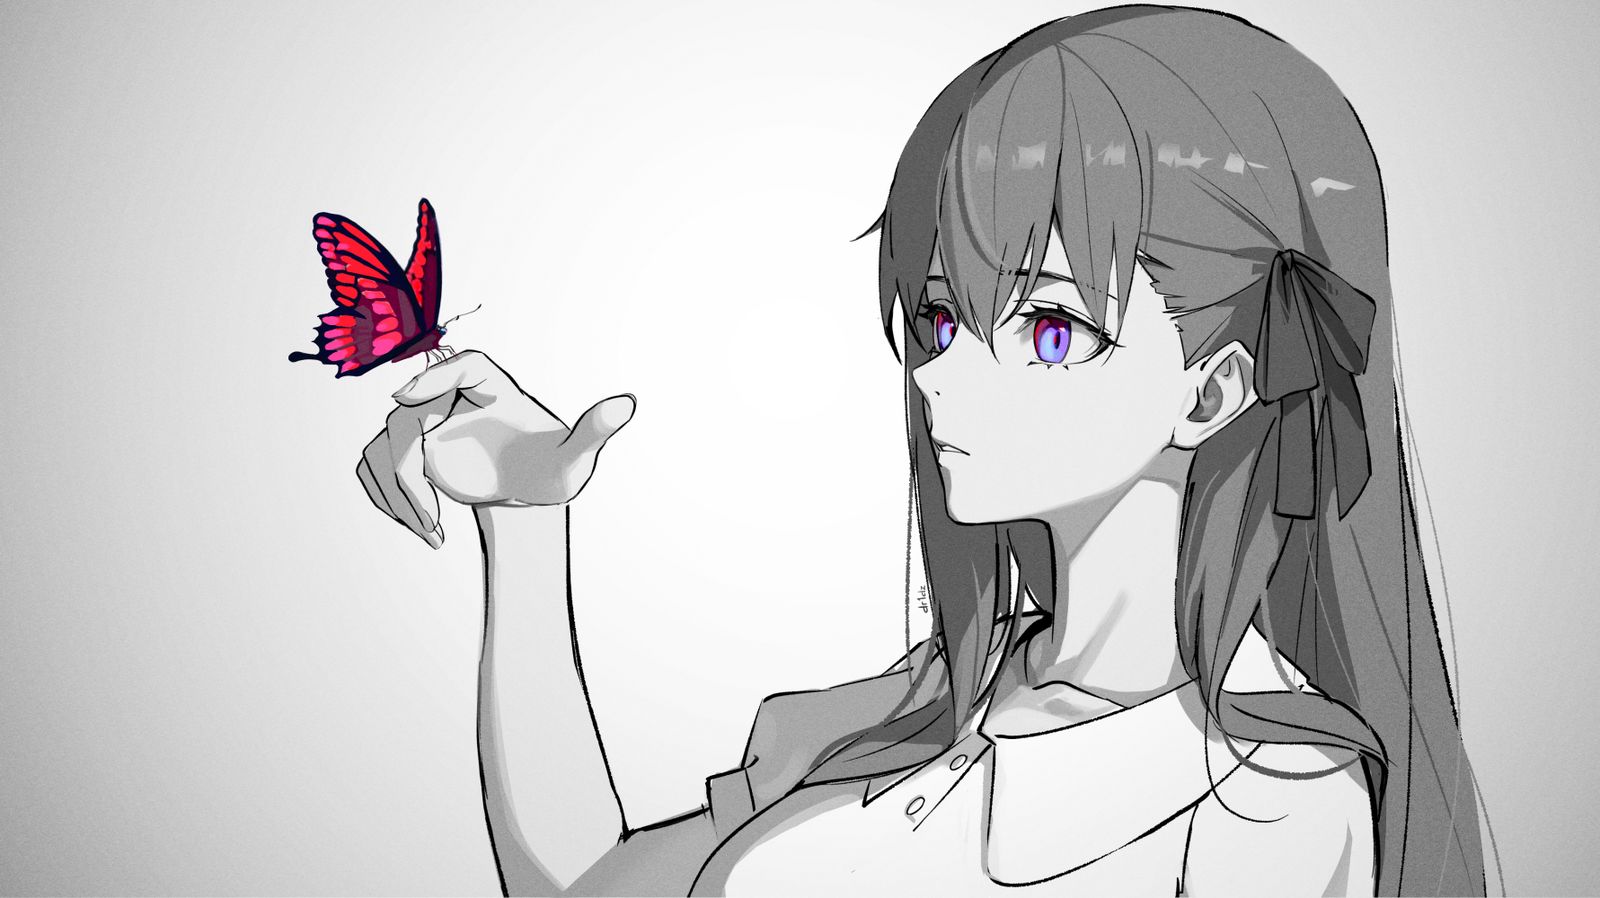 Lost butterfly插画图片壁纸